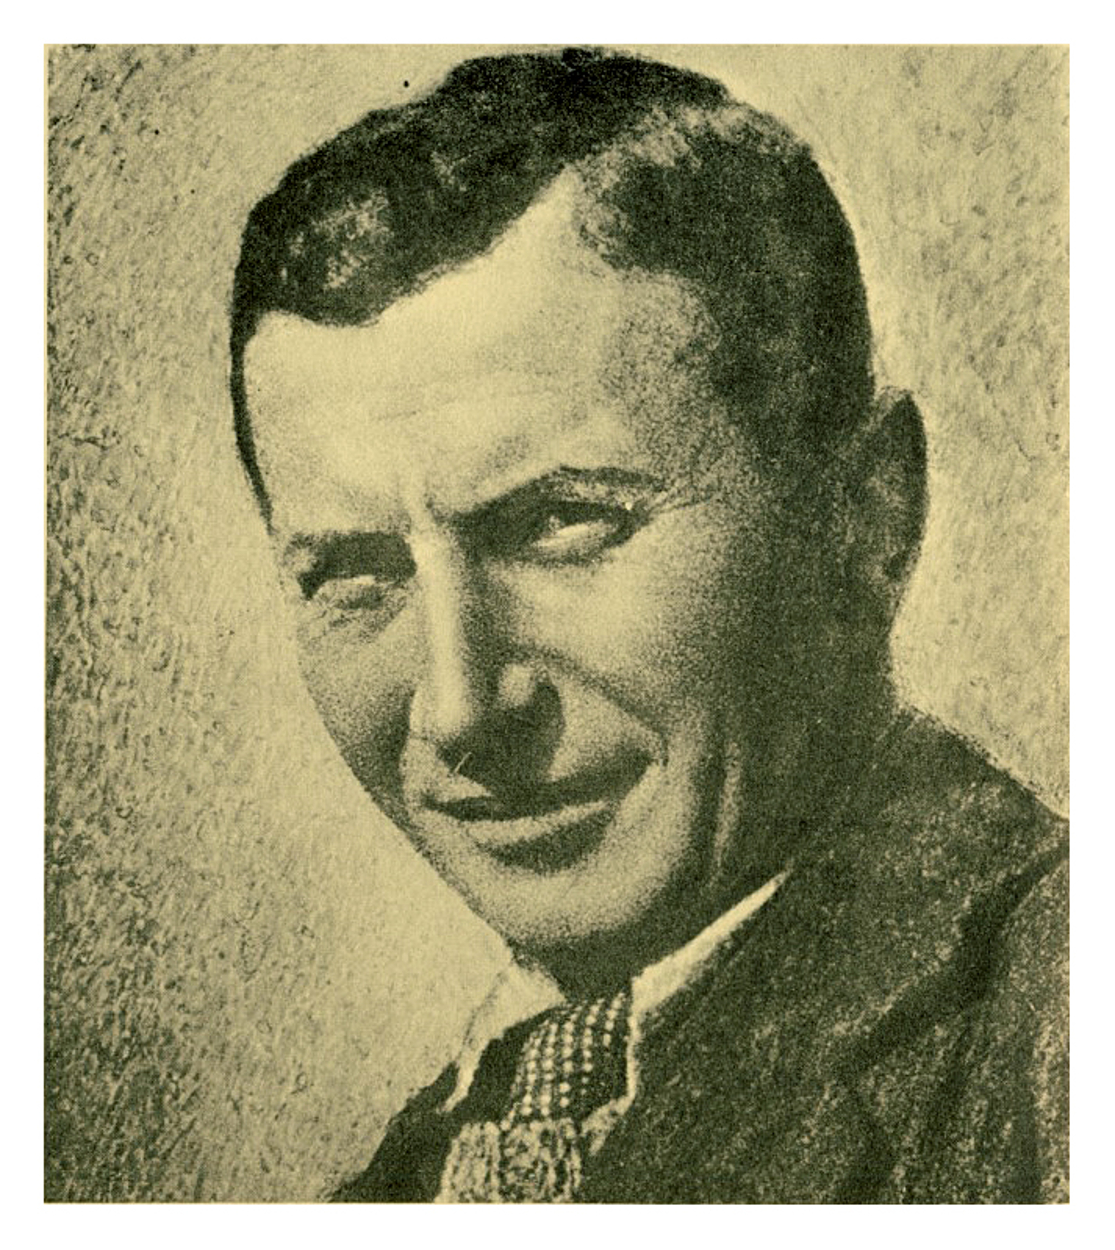 Zoltán Palugyay - 8 de noviembre de 1898 - 18 de septiembre de 1935